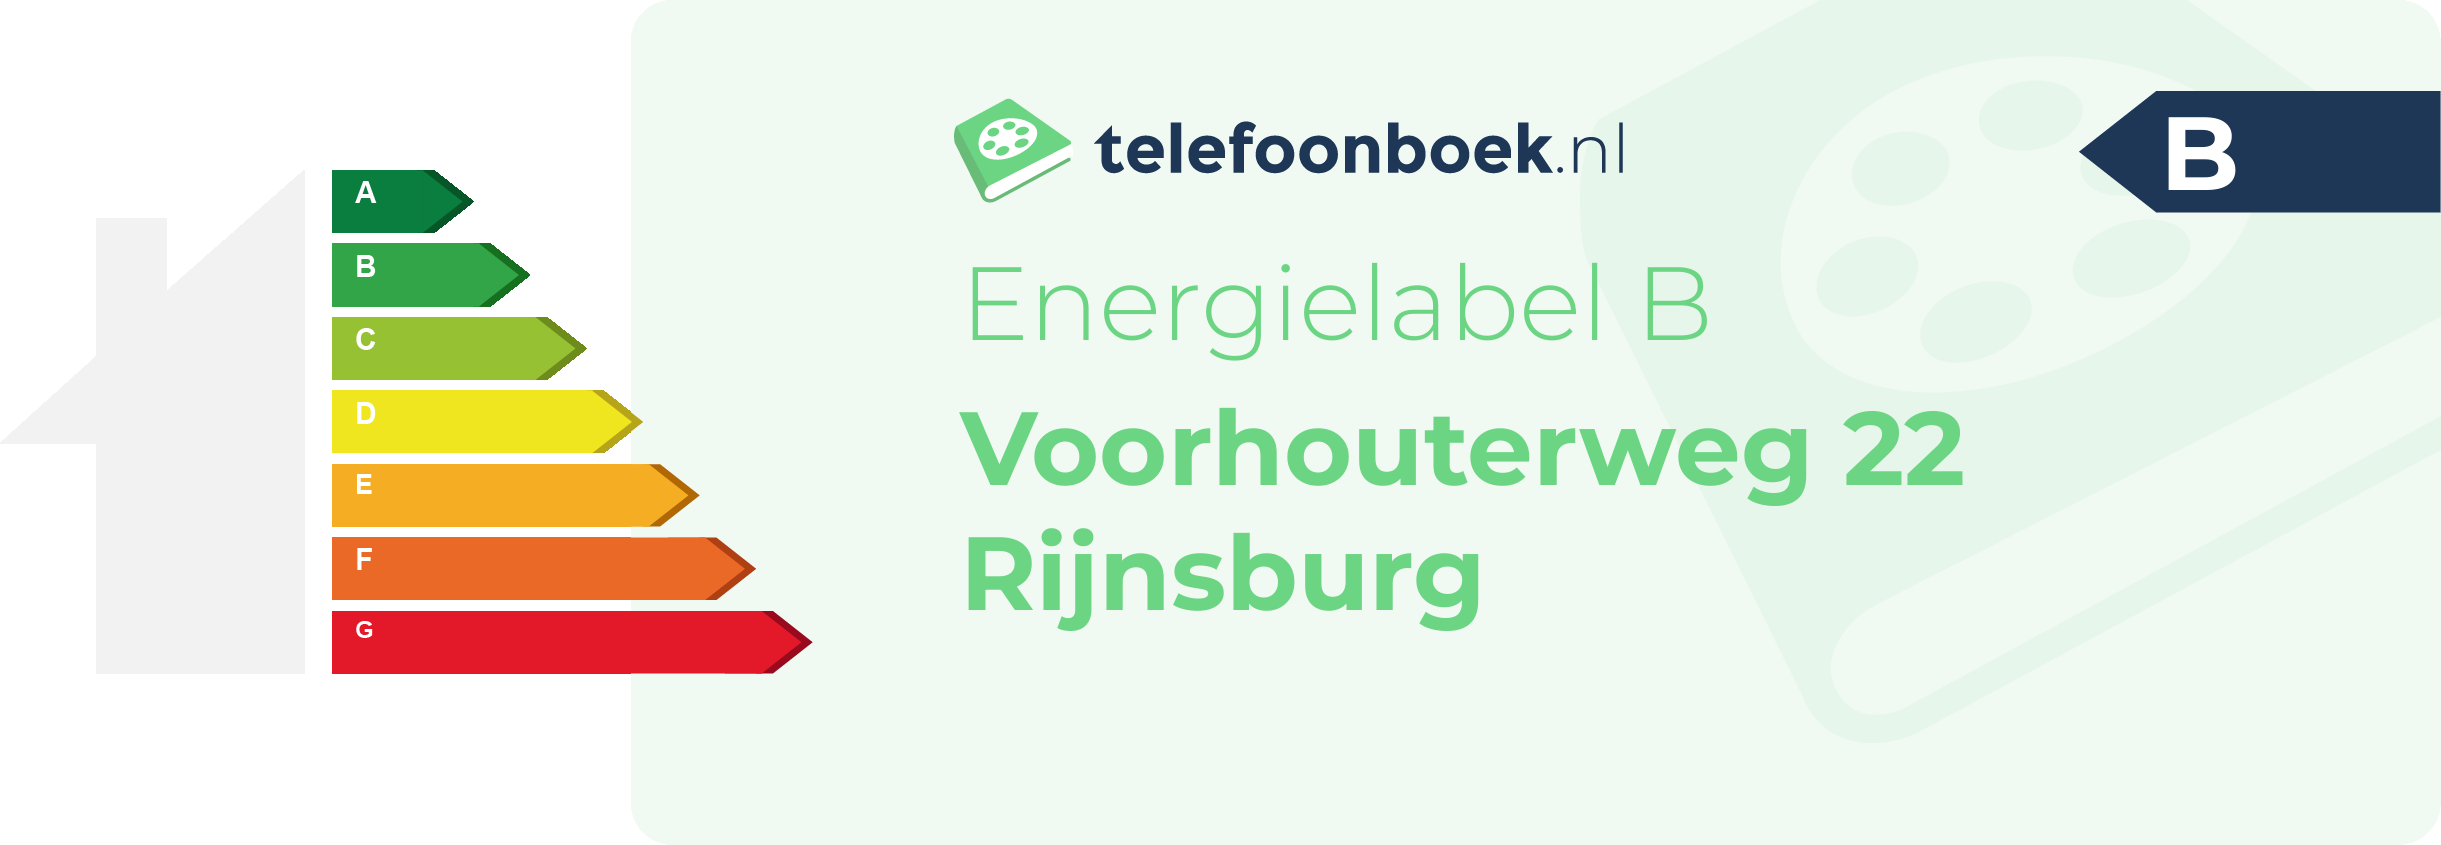 Energielabel Voorhouterweg 22 Rijnsburg